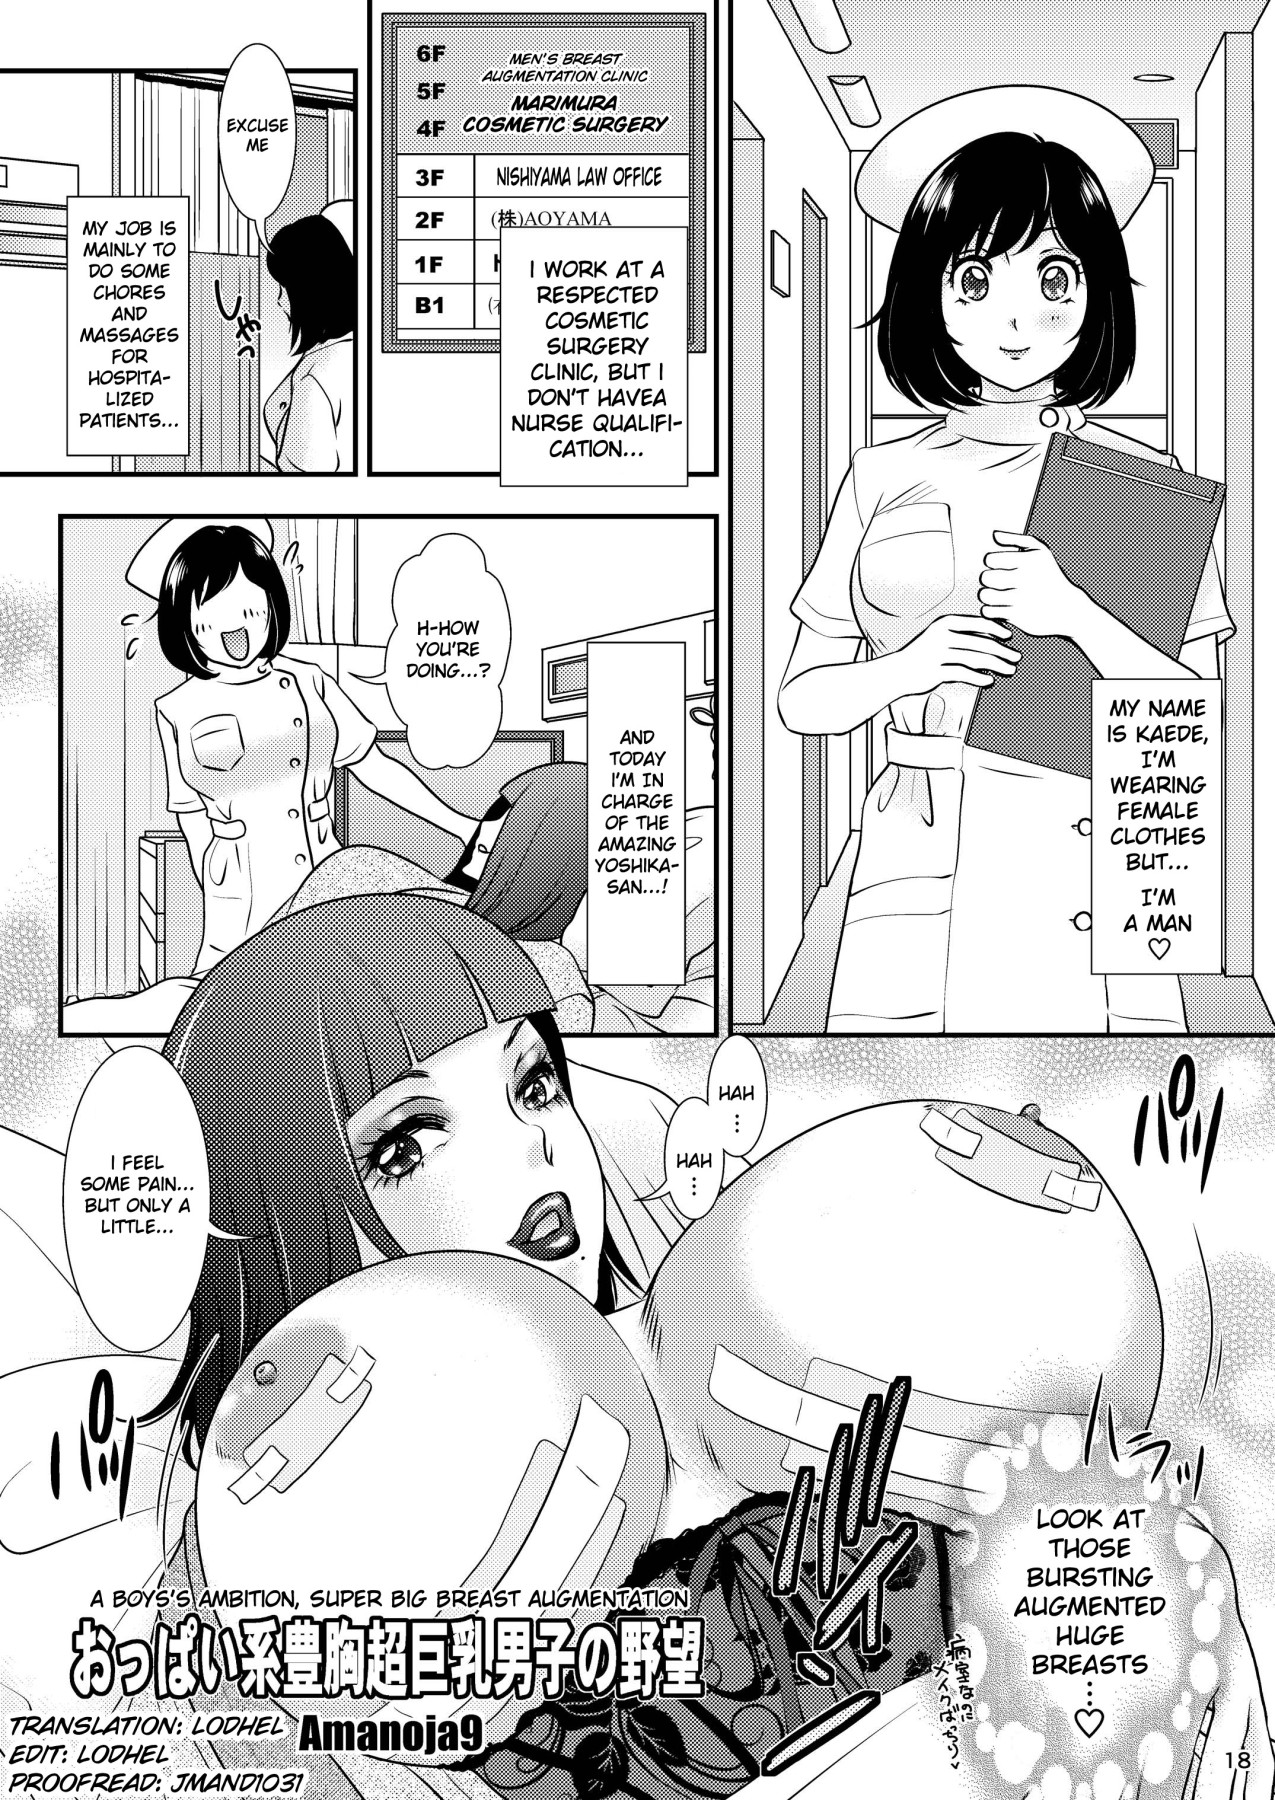 10 hentai manga